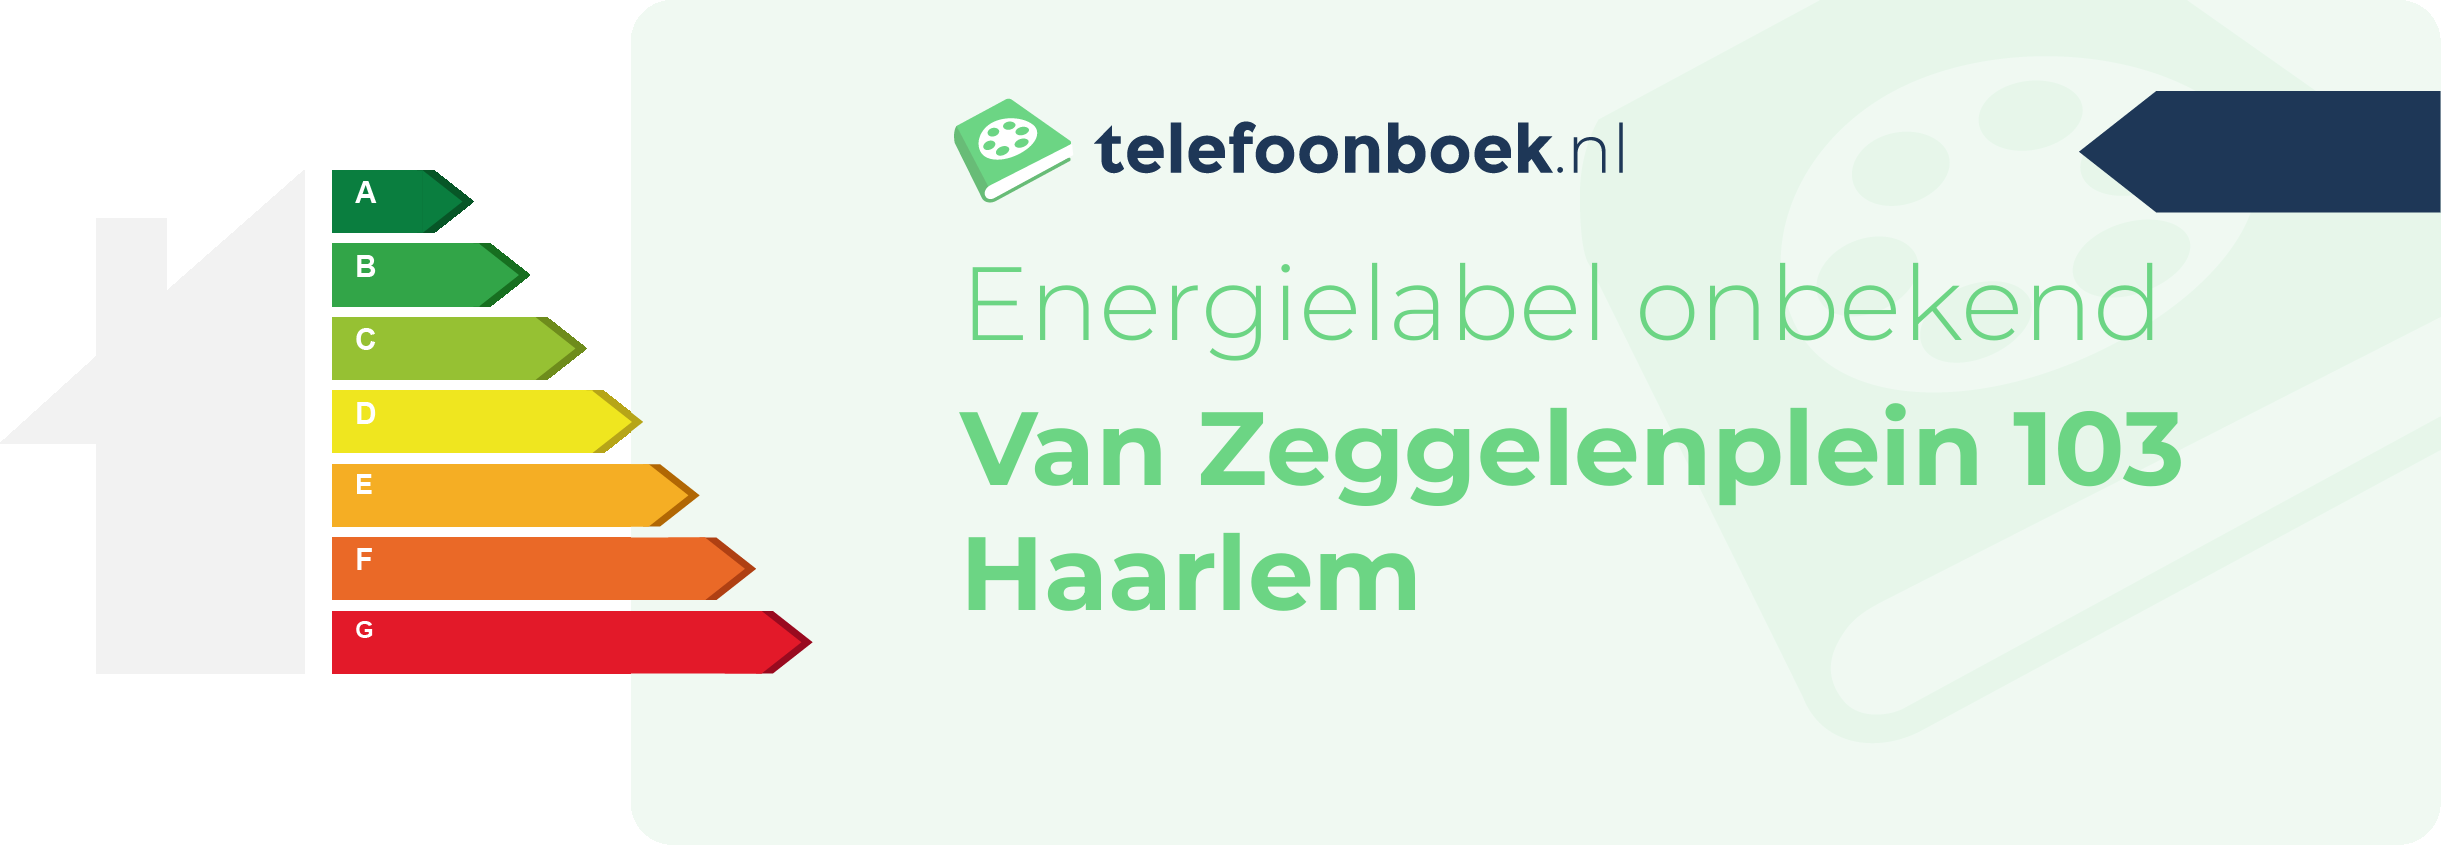 Energielabel Van Zeggelenplein 103 Haarlem